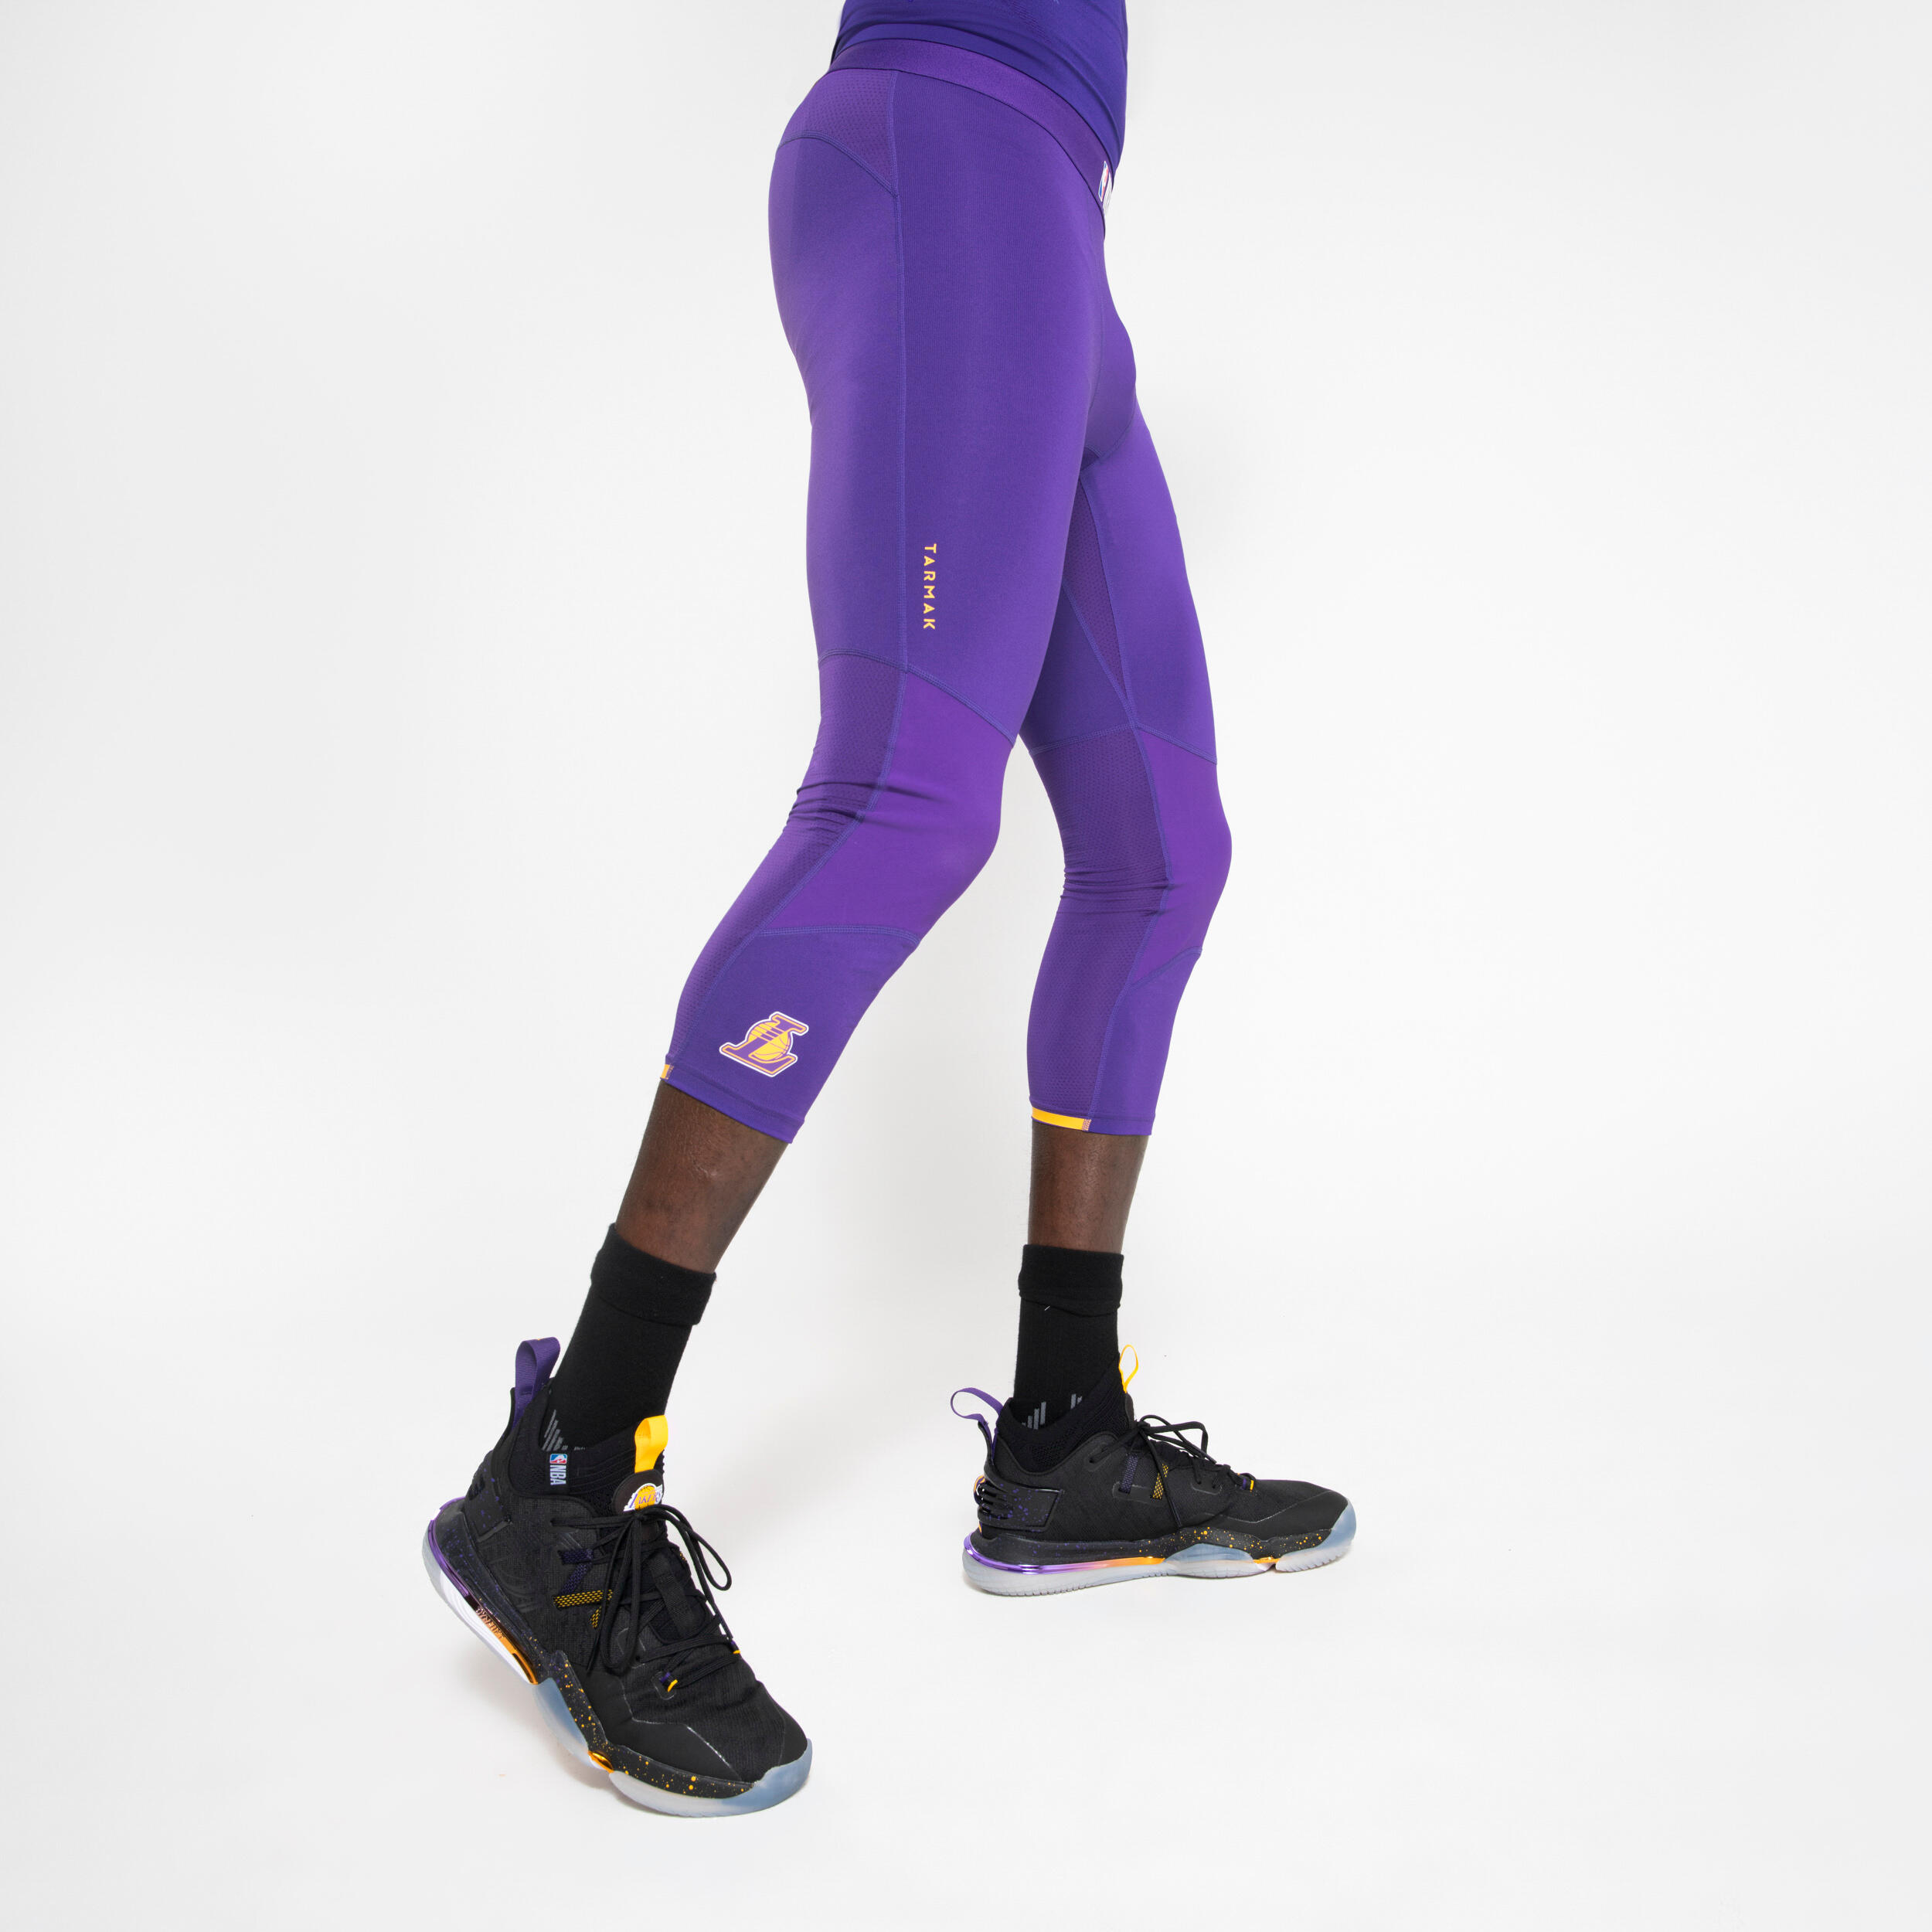 Buy Men'S Base Layer Capri Basketball Leggings - Purple/Nba Los